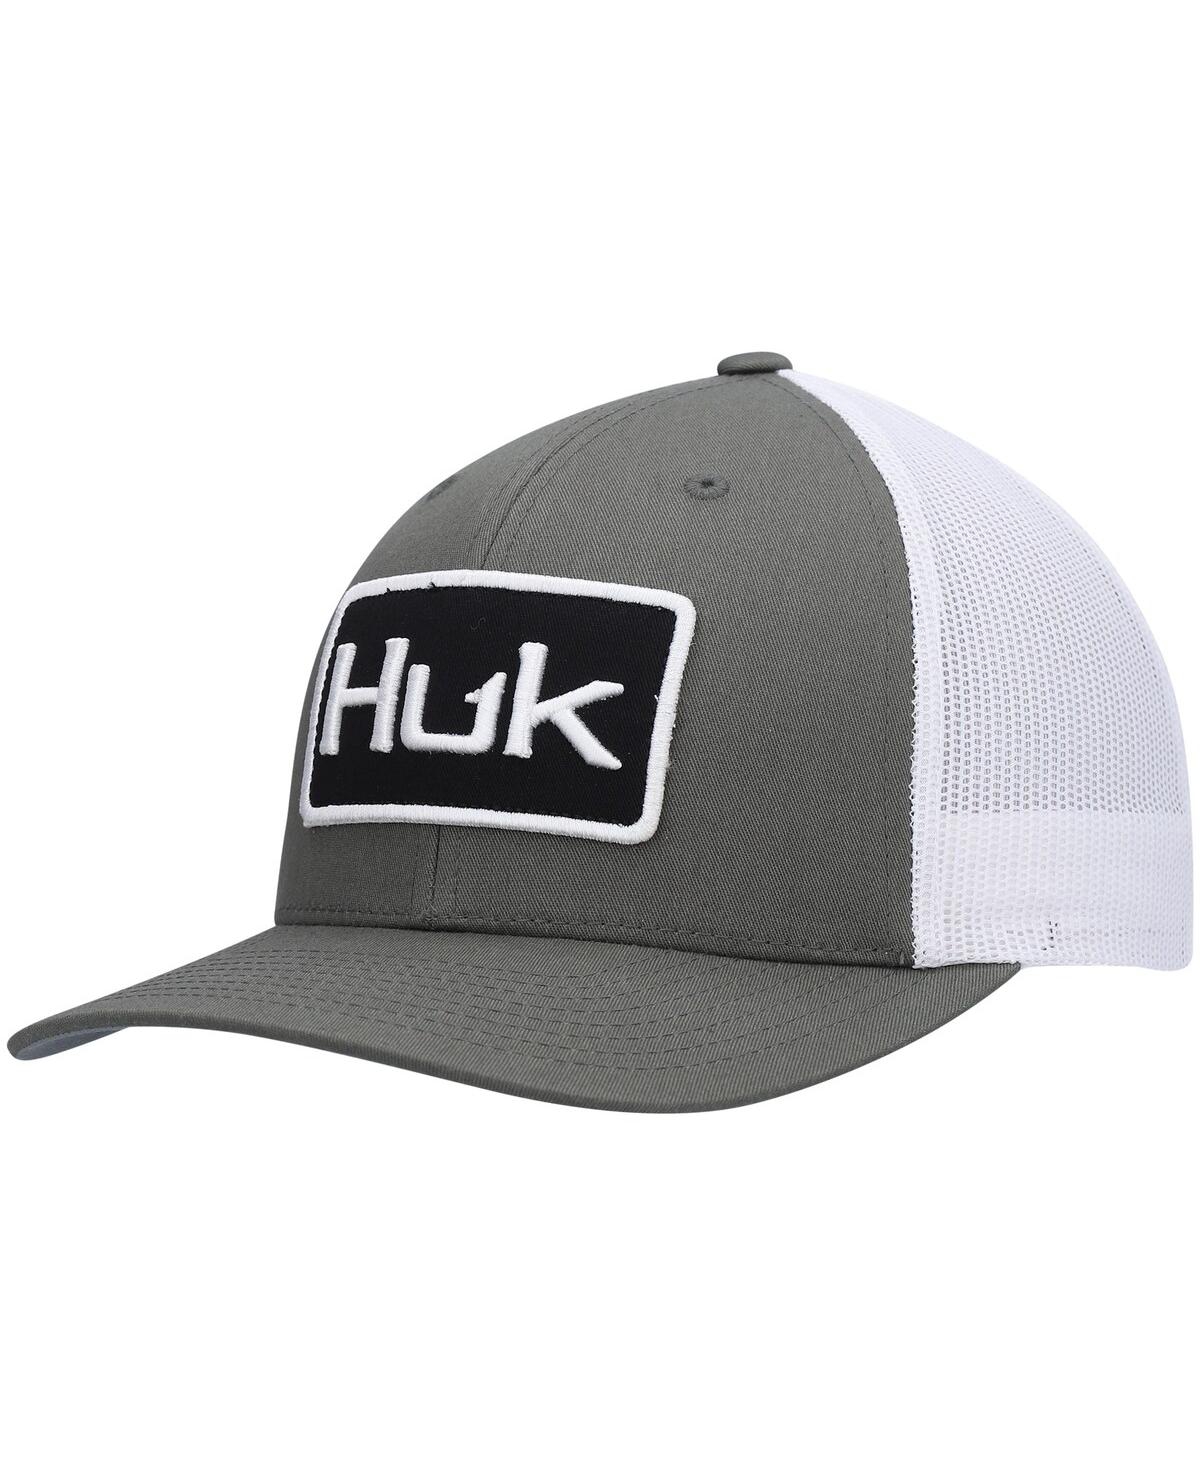 Men's Huk Olive Solid Trucker Snapback Hat - Olive